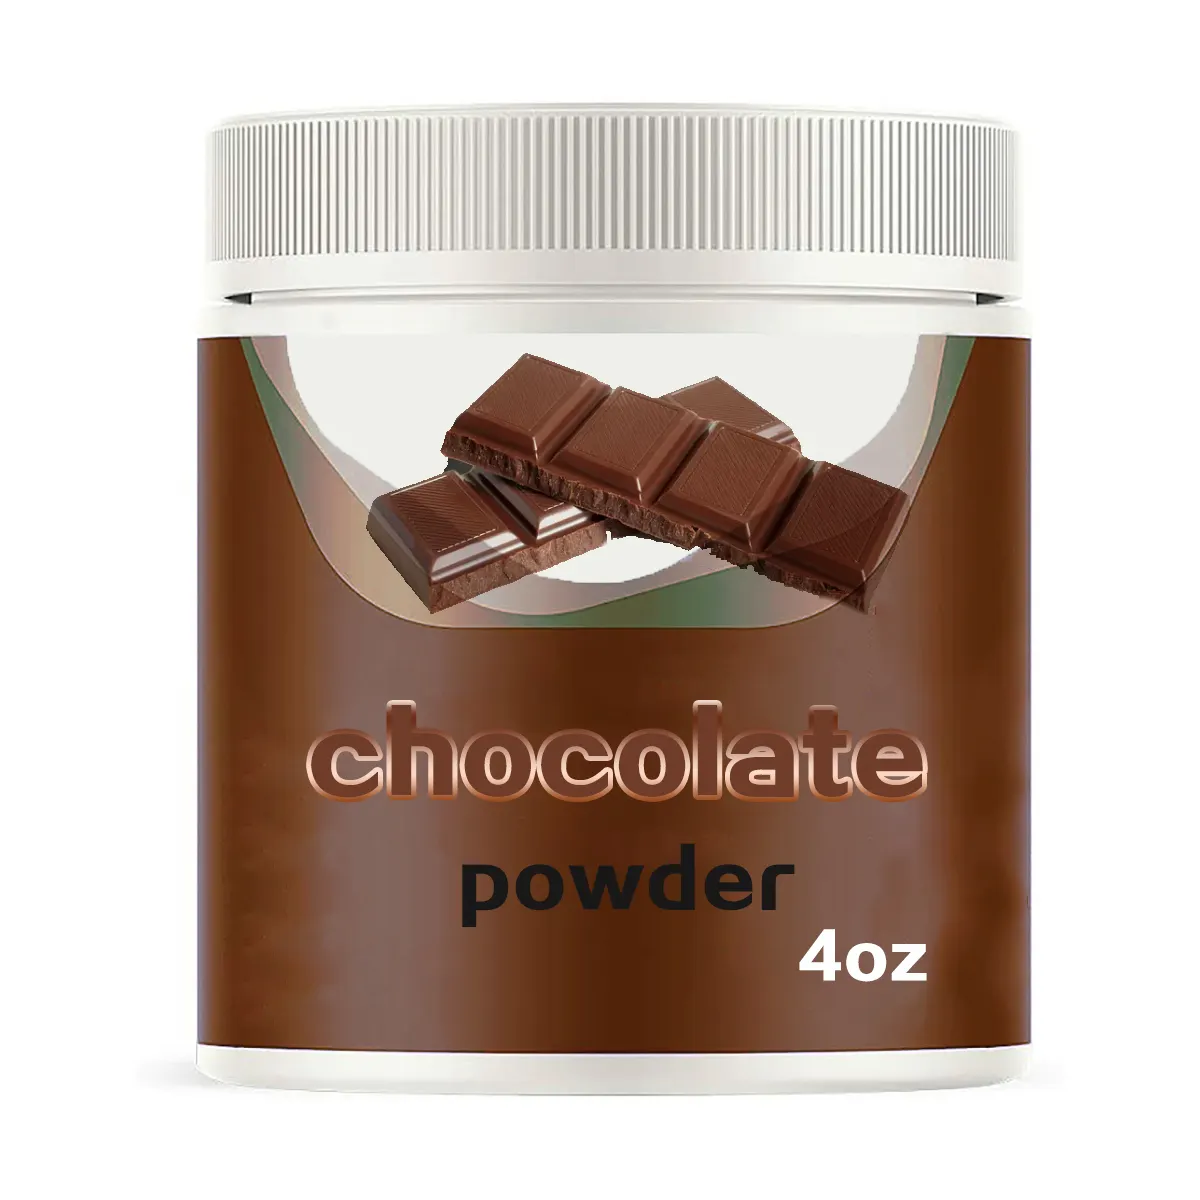 Novo Produto Instant Chocolate Bebida Leite Chocolate Cacau Em Pó Premix Instantâneo Sabor Chocolate Quente Em Pó